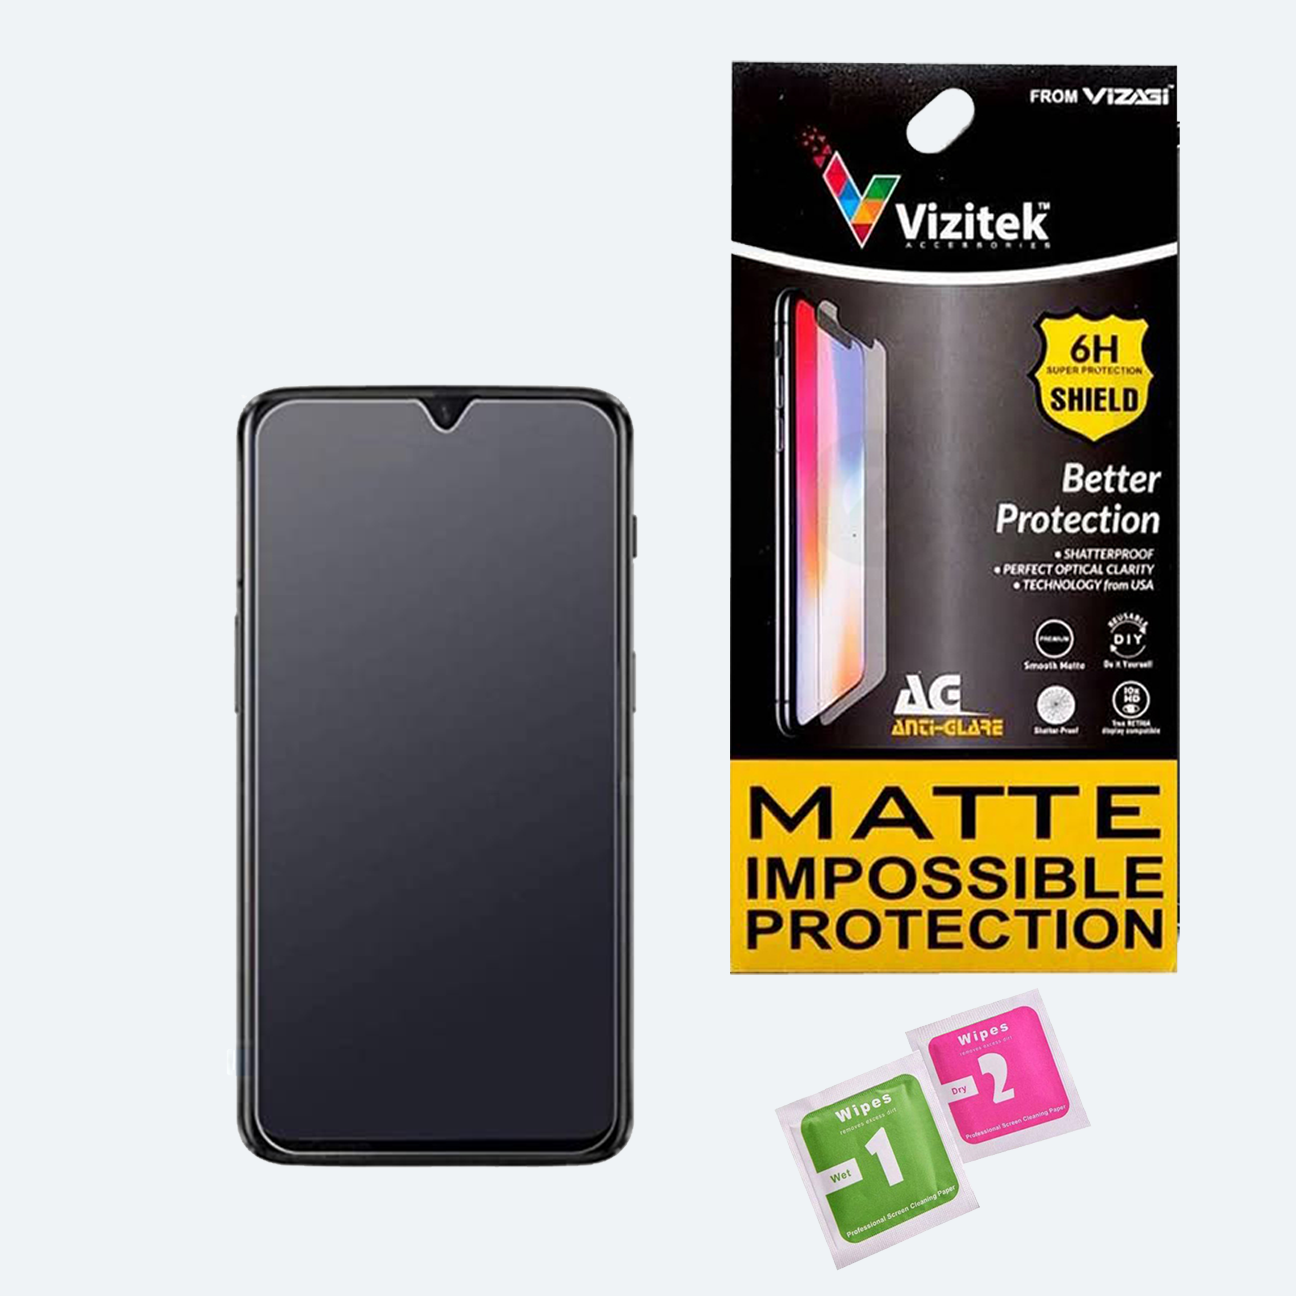 Samsung Galaxy J7 NXT Matte Unbreakable Glass